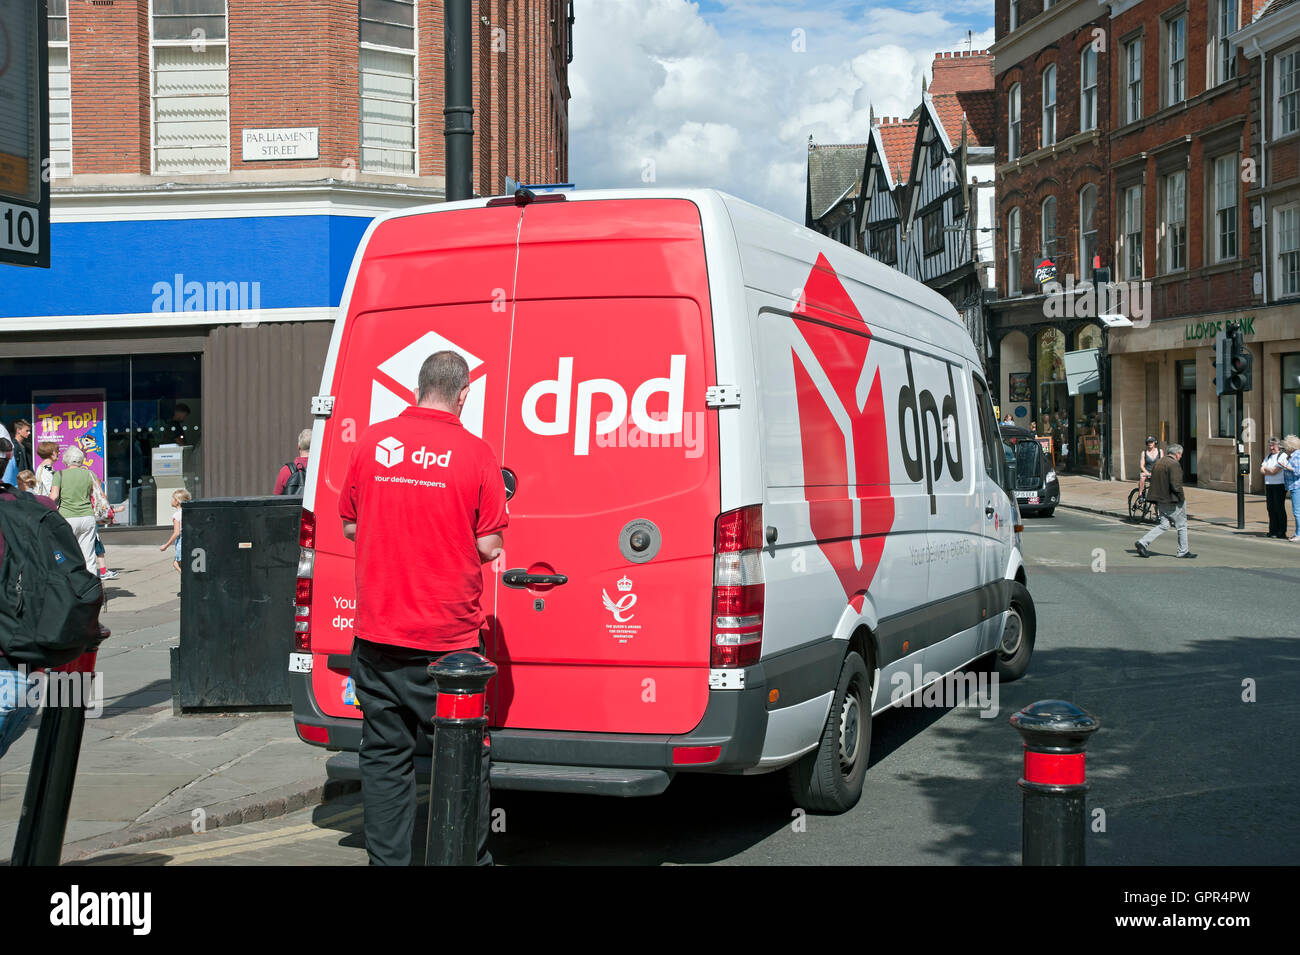 DPD livreur chauffeur homme personne courrier et van livrant des marchandises dans le centre-ville York North Yorkshire Angleterre Royaume-Uni Grande-Bretagne Banque D'Images